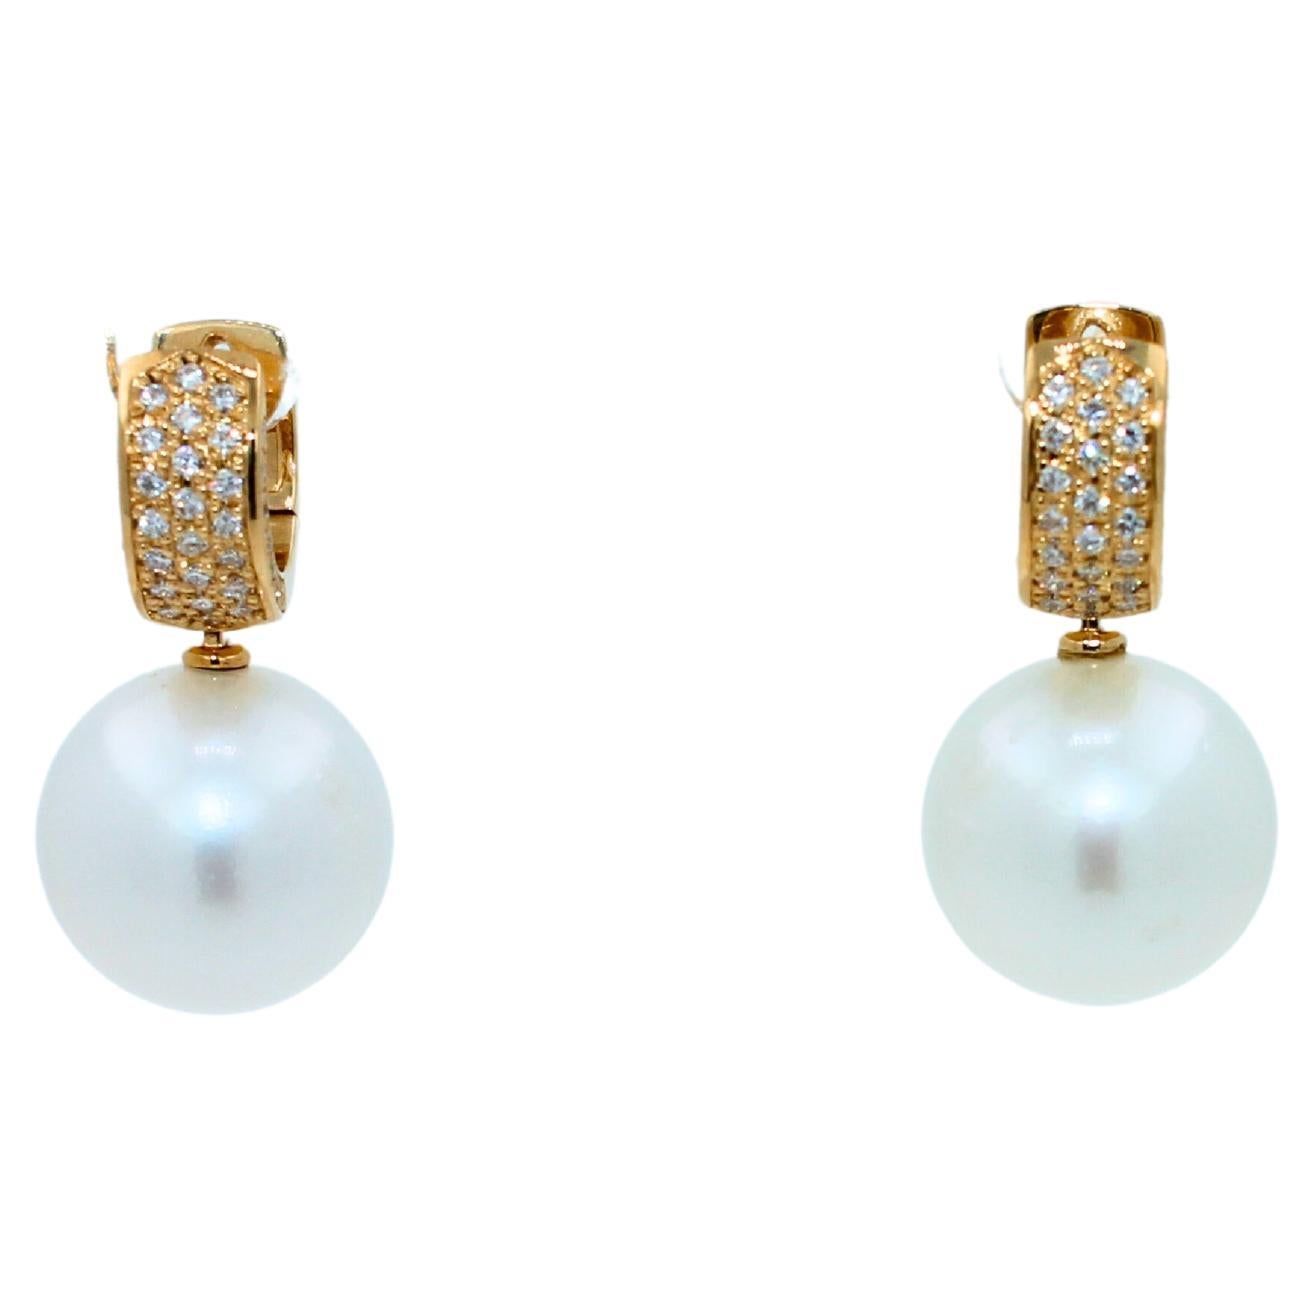 Boucles d'oreilles Huggie en or jaune 18 carats avec perles rondes blanches des mers du Sud et diamants